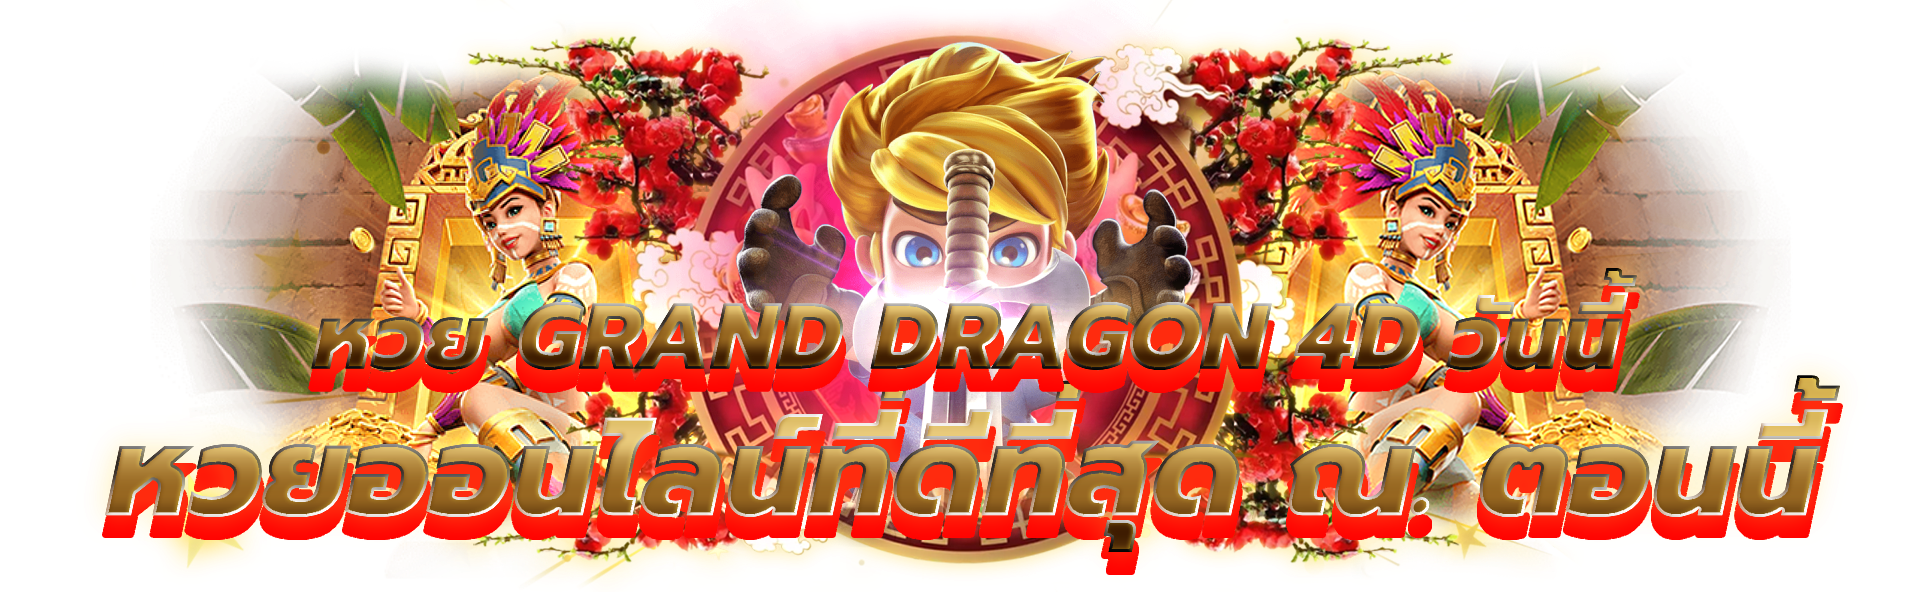 ตื่นเต้นกับ หวย grand dragon4d วันนี้ วันนี้และบันทึกความเป็น Big Winner ในคาสิโน! Gran Dragon 4D Lottery